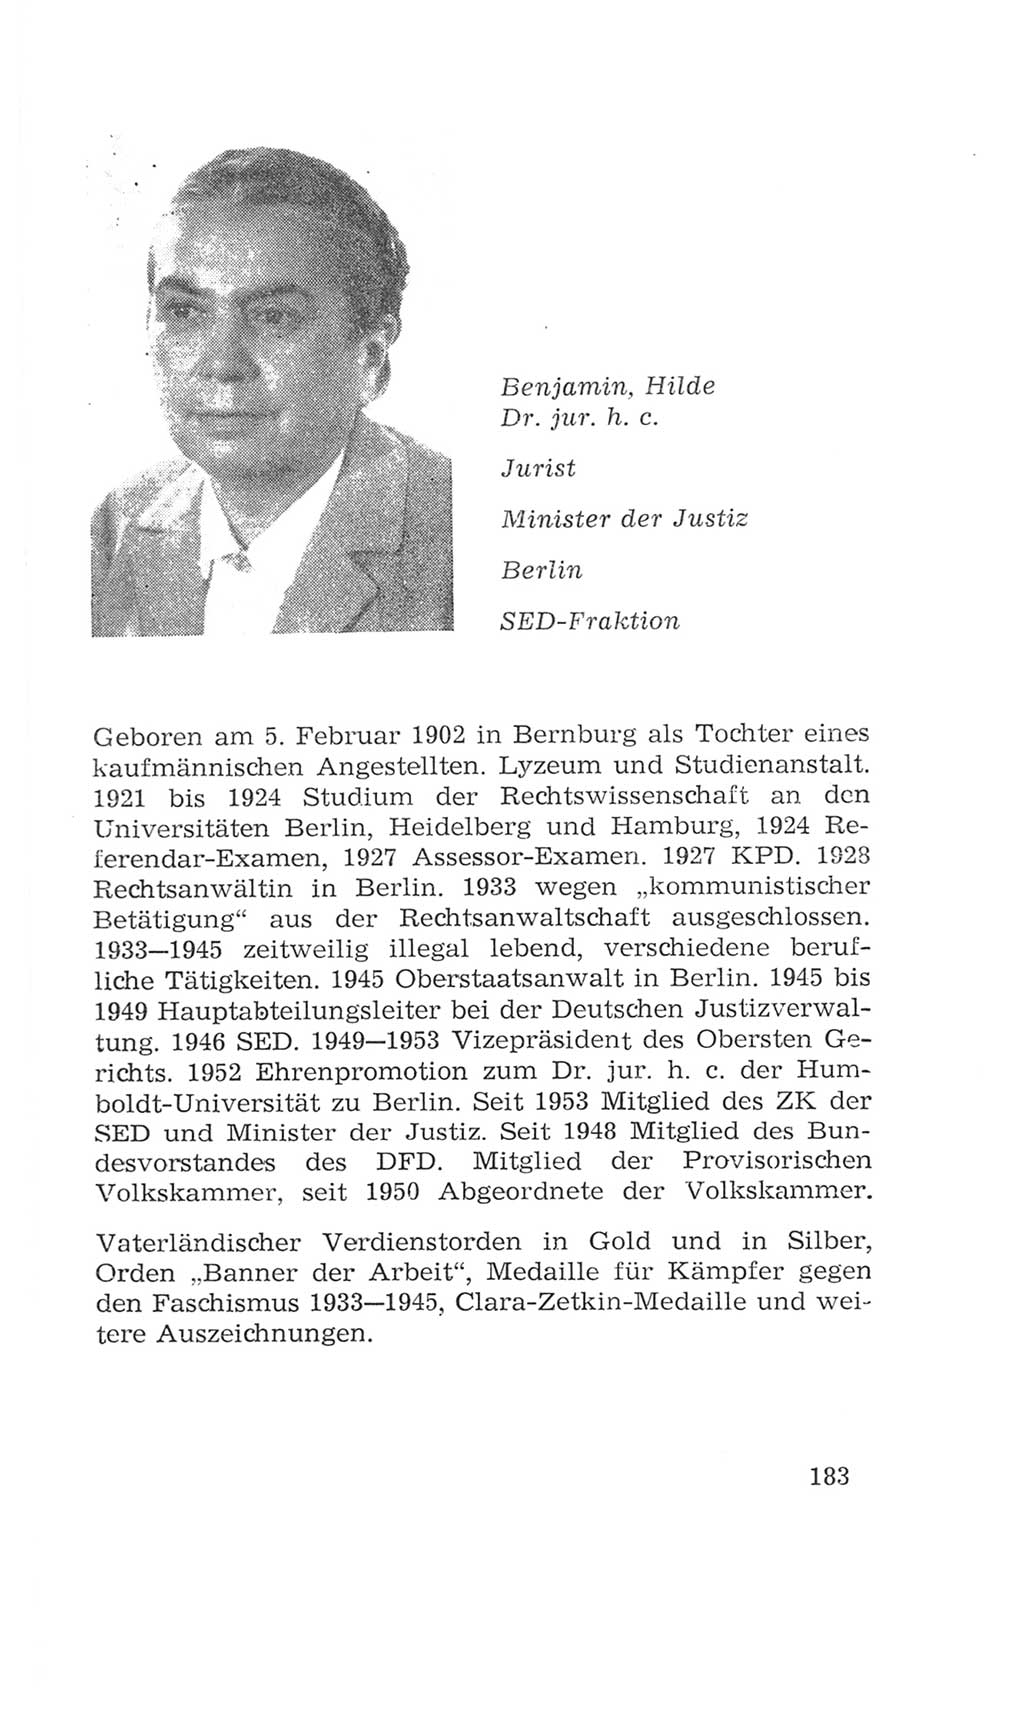 Volkskammer (VK) der Deutschen Demokratischen Republik (DDR), 4. Wahlperiode 1963-1967, Seite 183 (VK. DDR 4. WP. 1963-1967, S. 183)